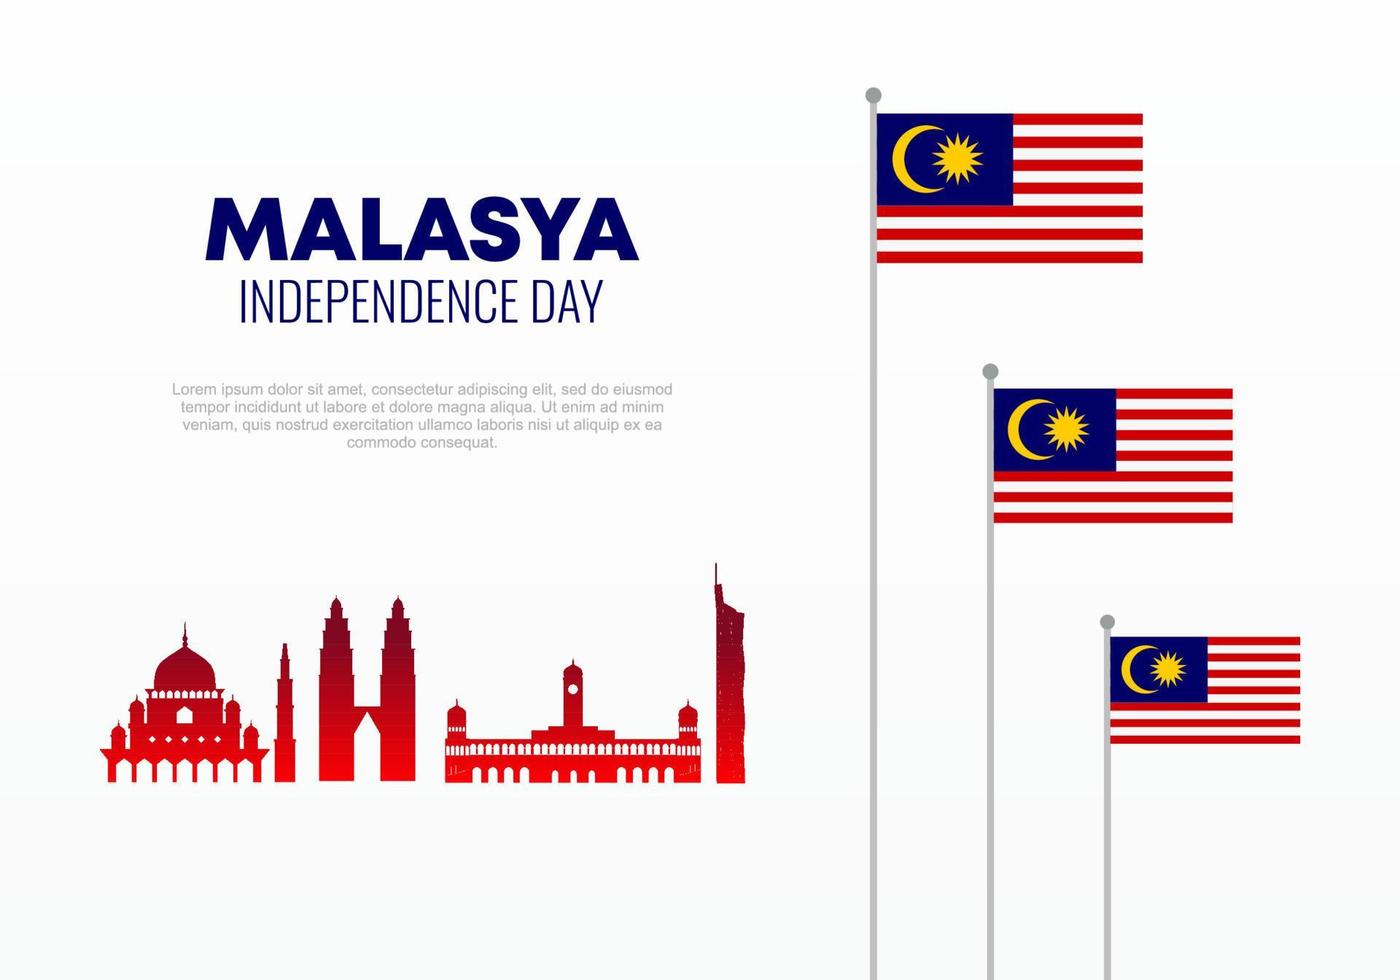 célébration nationale de la fête de l'indépendance de la malaisie le 31 août. vecteur